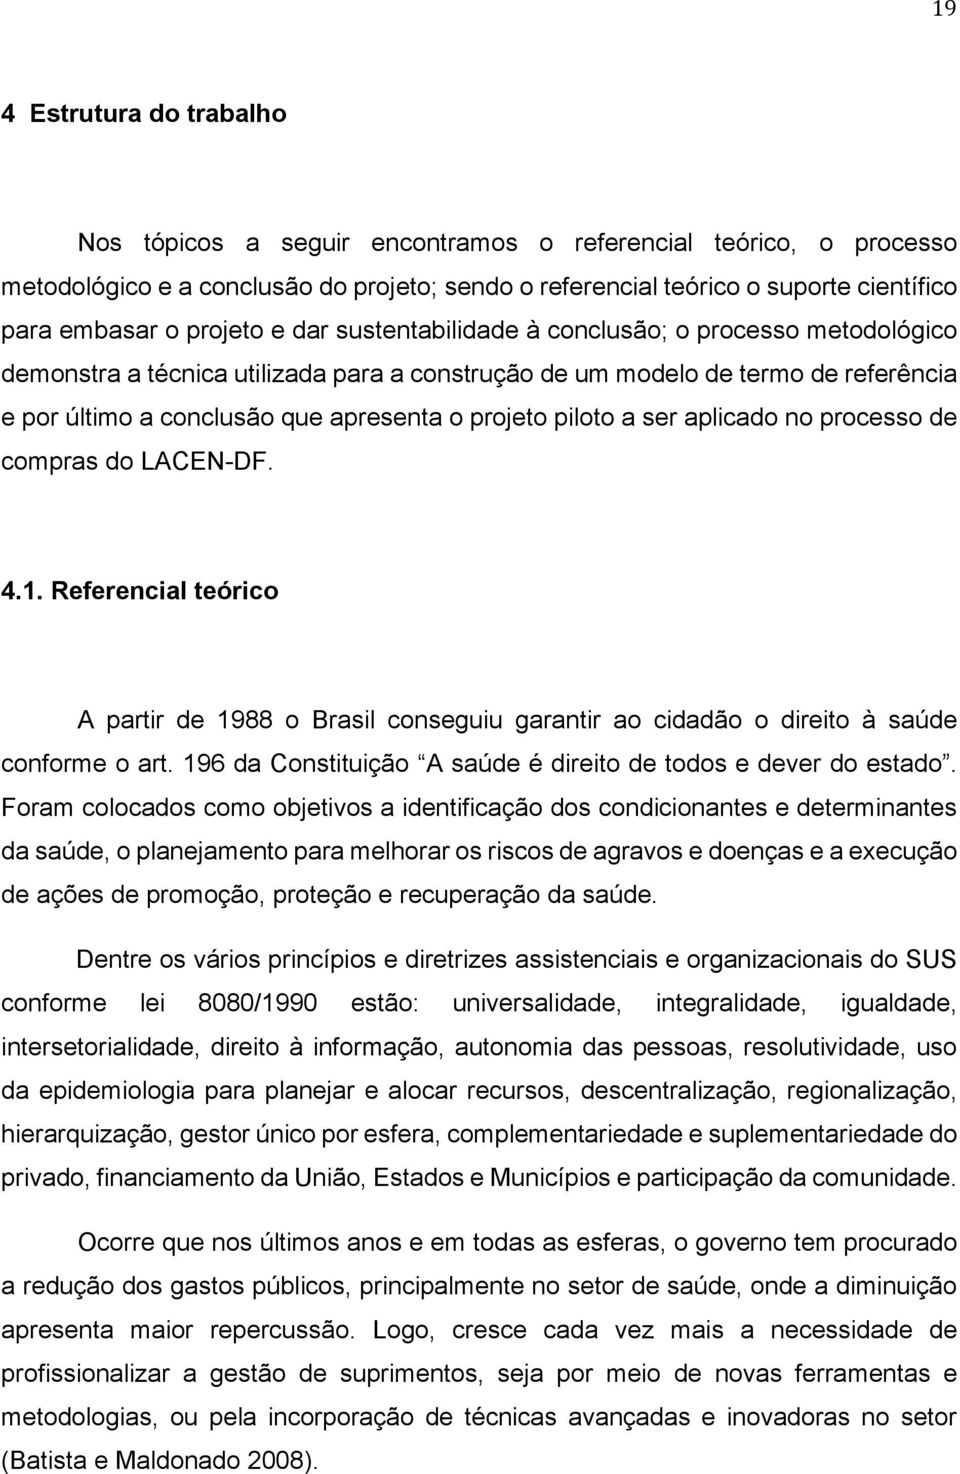 projeto piloto a ser aplicado no processo de compras do LACEN-DF. 4.1. Referencial teórico A partir de 1988 o Brasil conseguiu garantir ao cidadão o direito à saúde conforme o art.